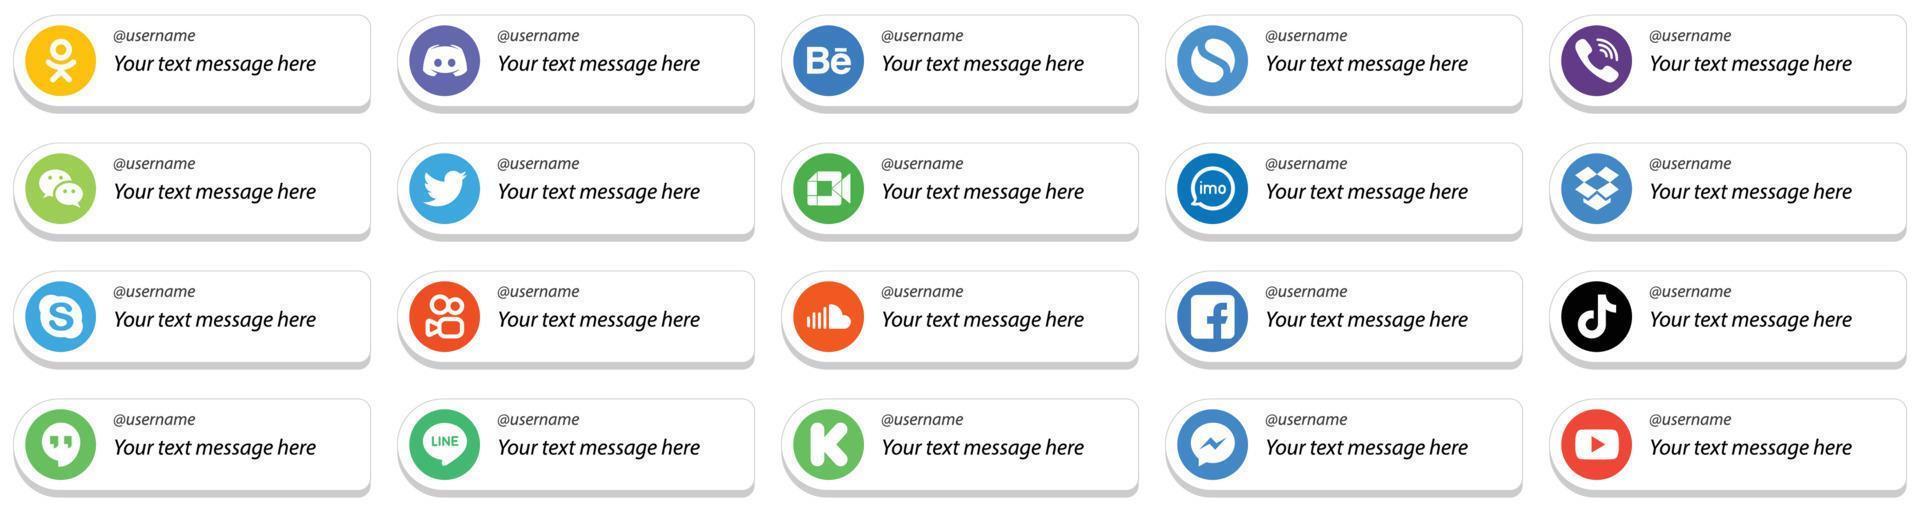 paquete de 20 íconos personalizables de redes sociales sígueme, como imo. video. Rakuten. iconos de google meet y twitter. alta calidad y minimalista vector